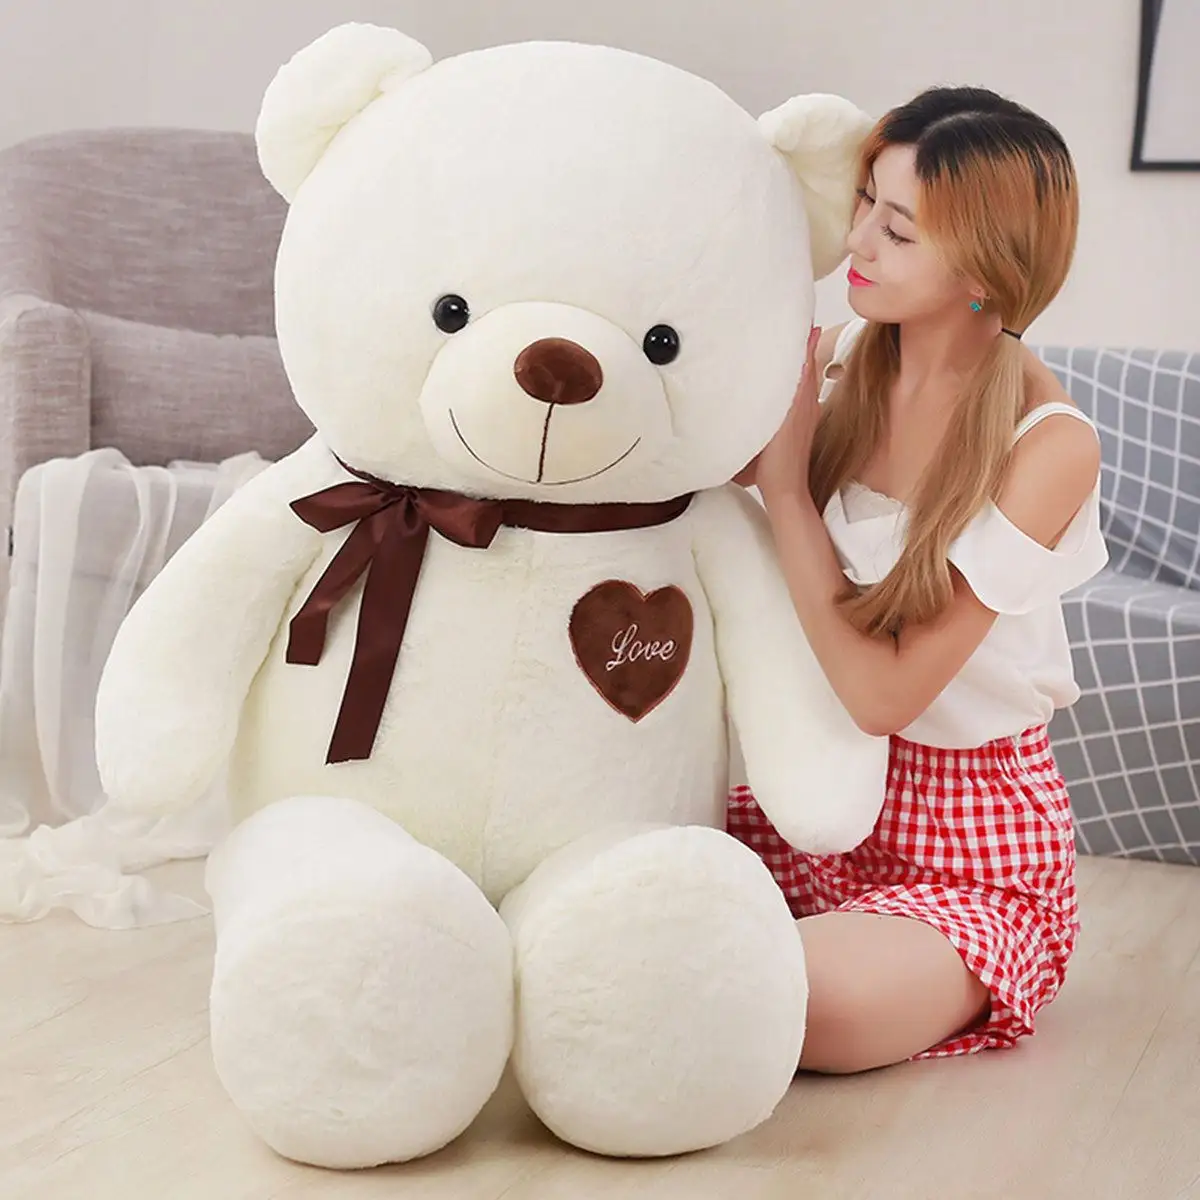 ตุ๊กตาหมีเท็ดดี้ขนาดใหญ่ยัดไส้ด้วยขนยัดไส้ให้แฟนของเธอเป็นของขวัญวันวาเลนไทน์